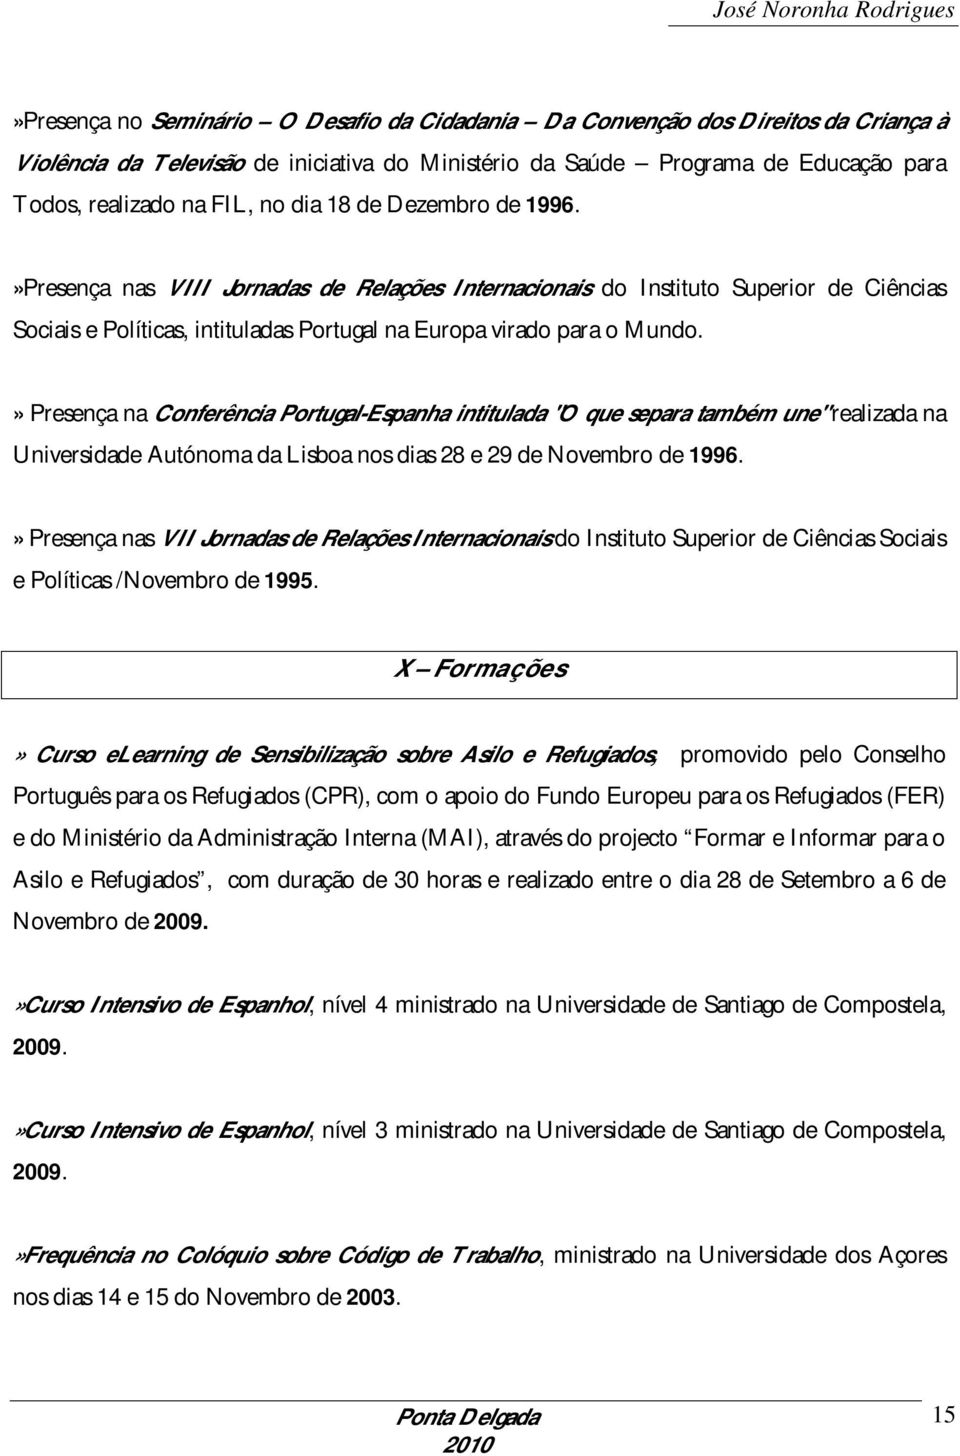 » Presença na Conferência Portugal-Espanha intitulada "O que separa também une" realizada na Universidade Autónoma da Lisboa nos dias 28 e 29 de Novembro de 1996.